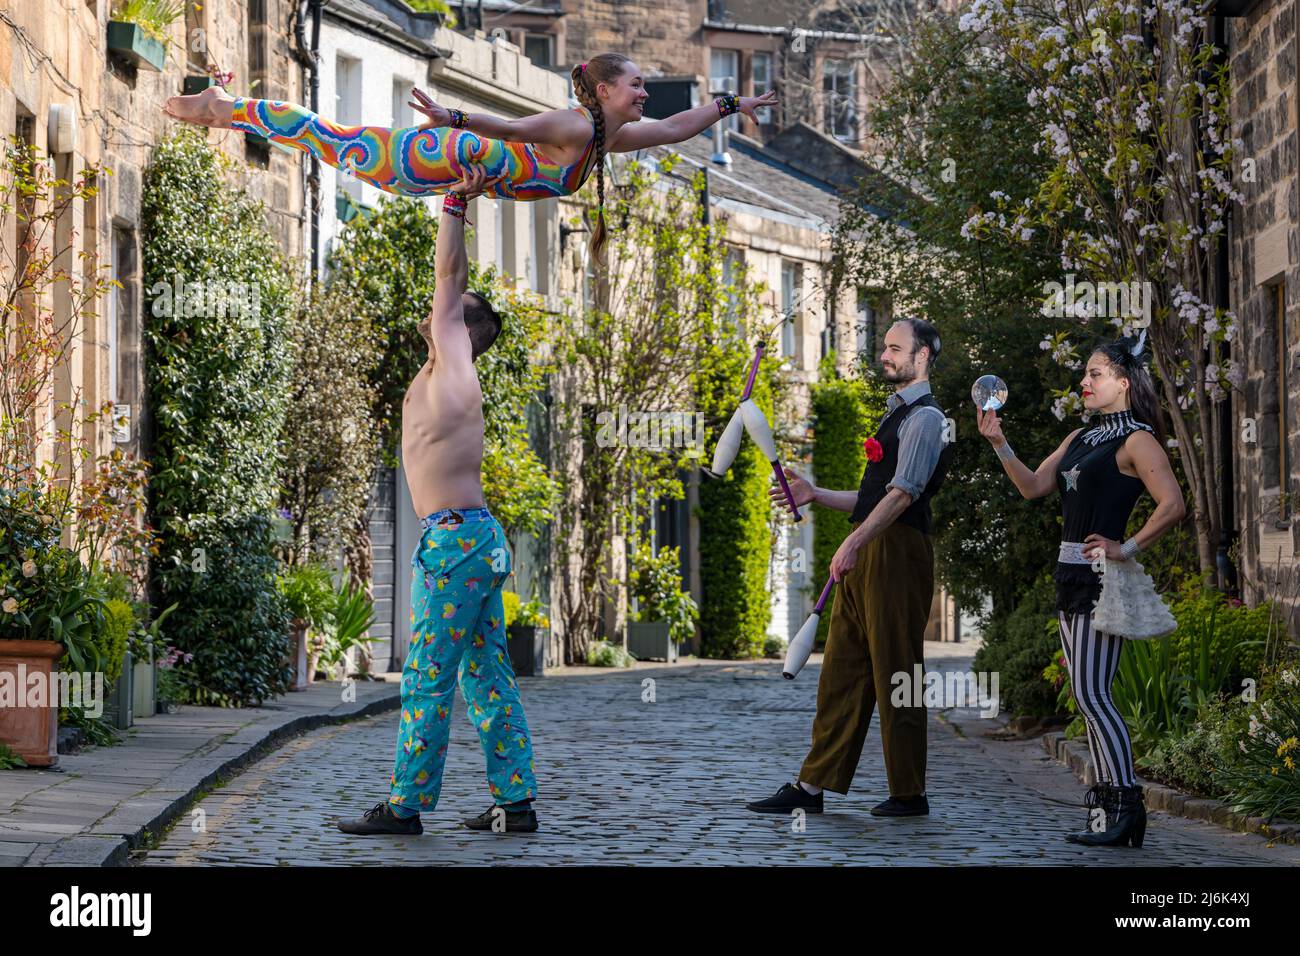 Acrobats, juggler and crystal ball gazing circus acts, Circus Lane, Edinburgh, Scotland, UK Stock Photo